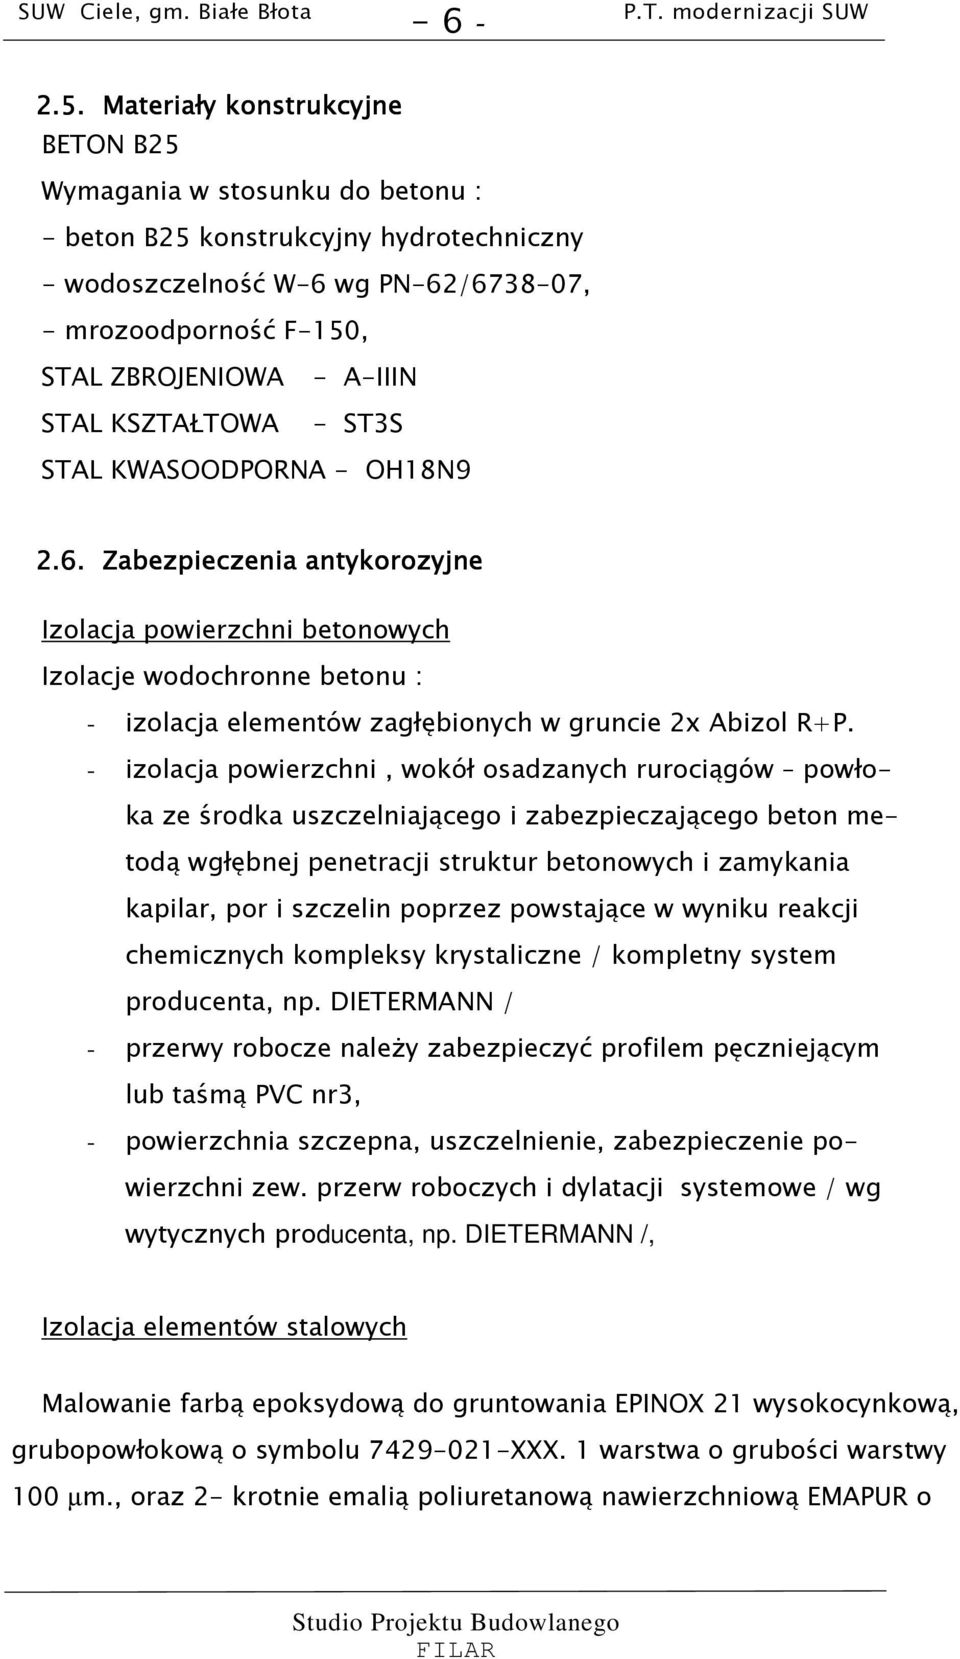 STAL KSZTAŁTOWA - ST3S STAL KWASOODPORNA - OH18N9 2.6.